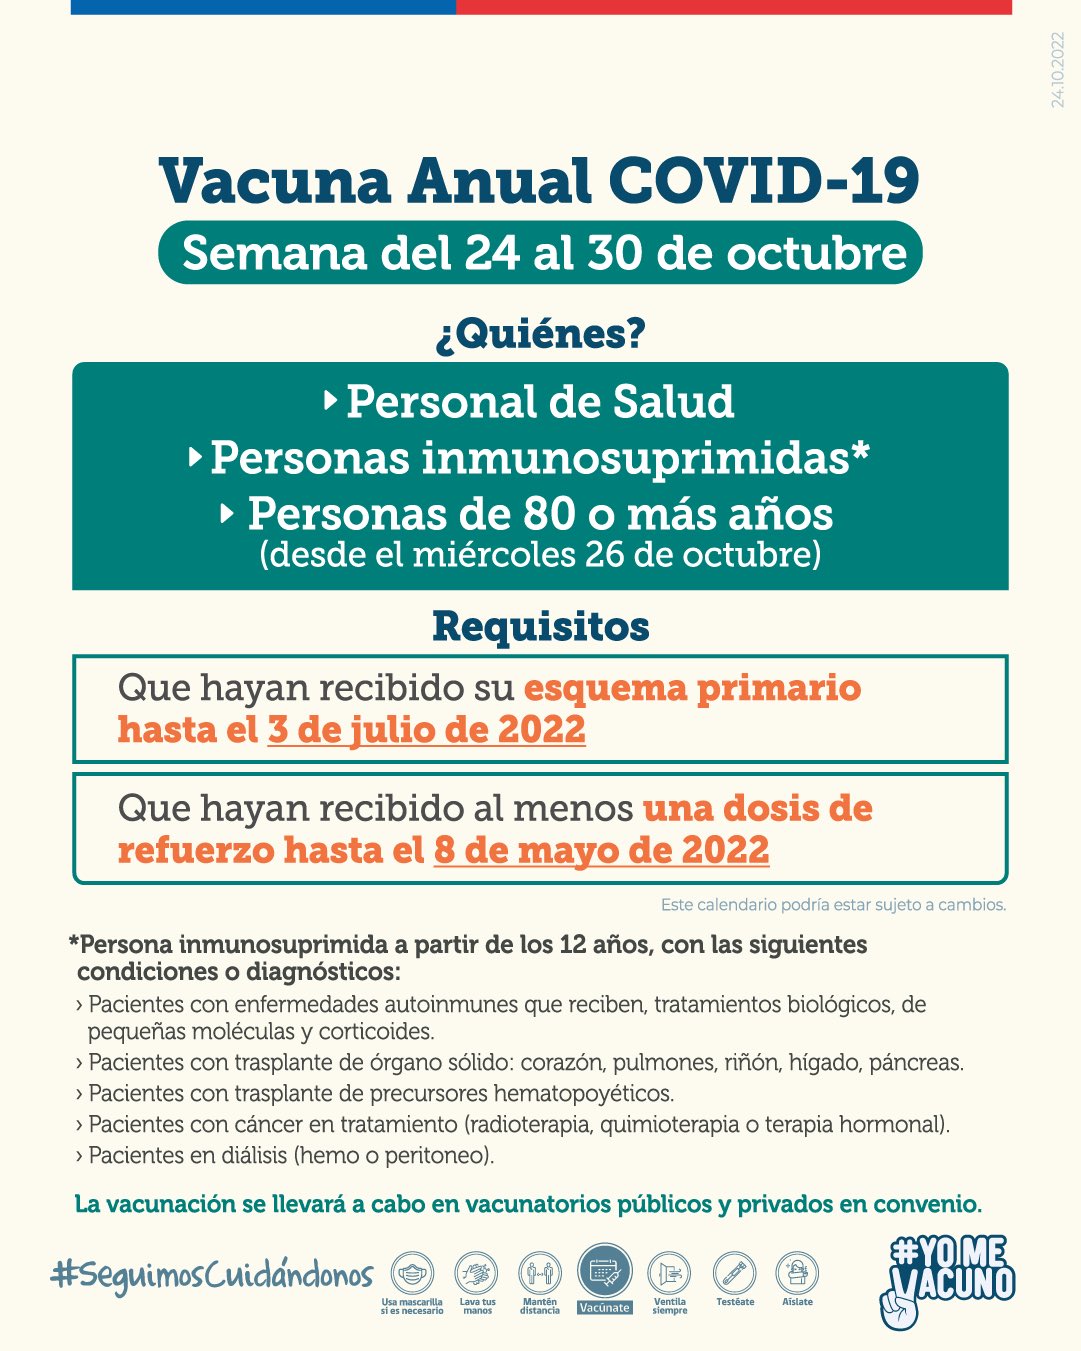 Minsal iniciará vacunación anual Covid-19 para personas de 80 años o más